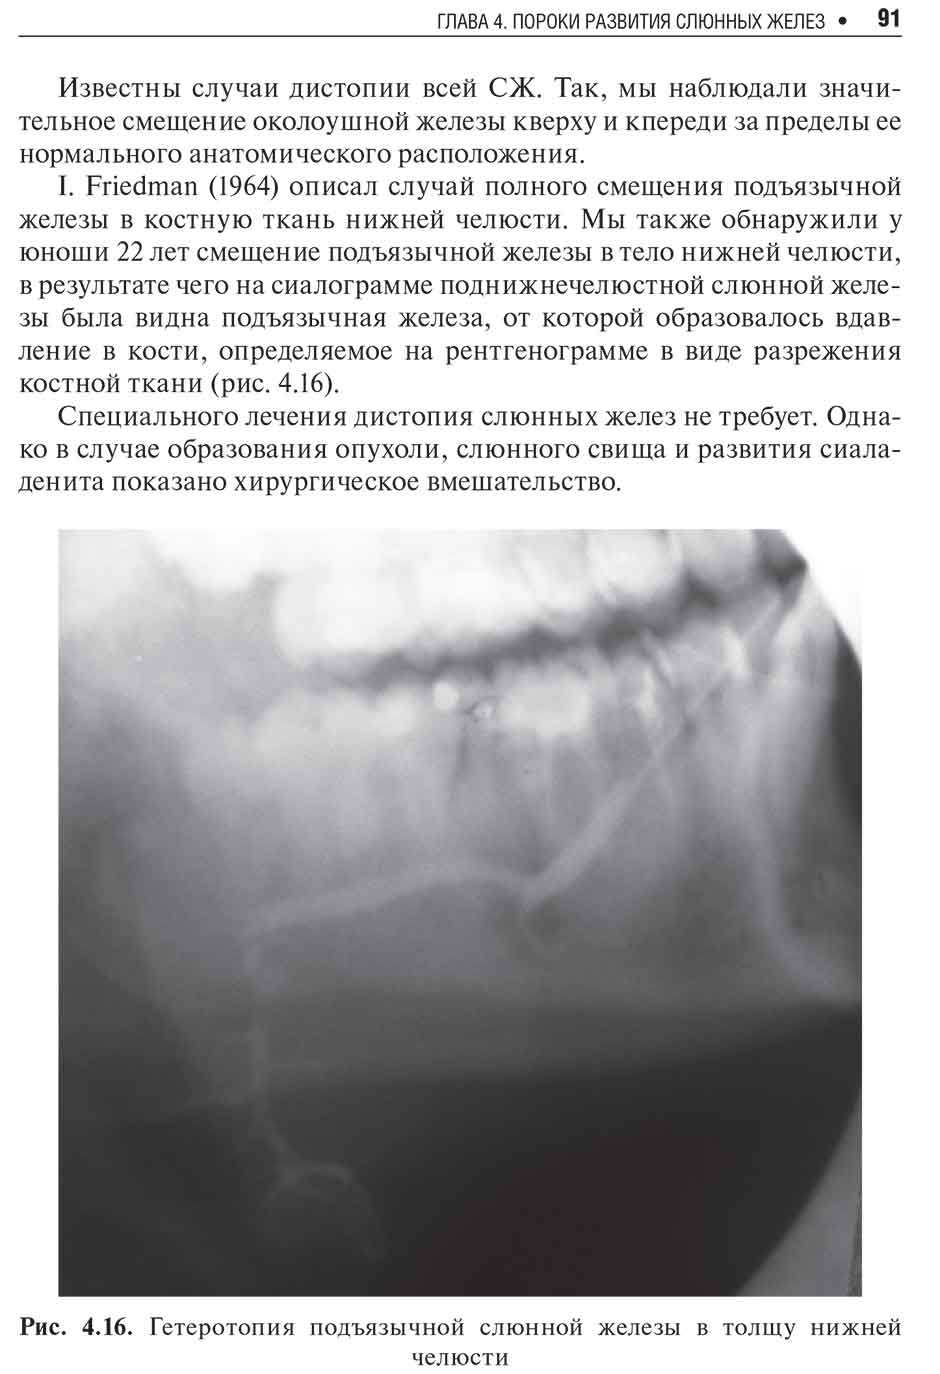 Рис. 4.16. Гетеротопия подъязычной слюнной железы в толщу нижней челюсти